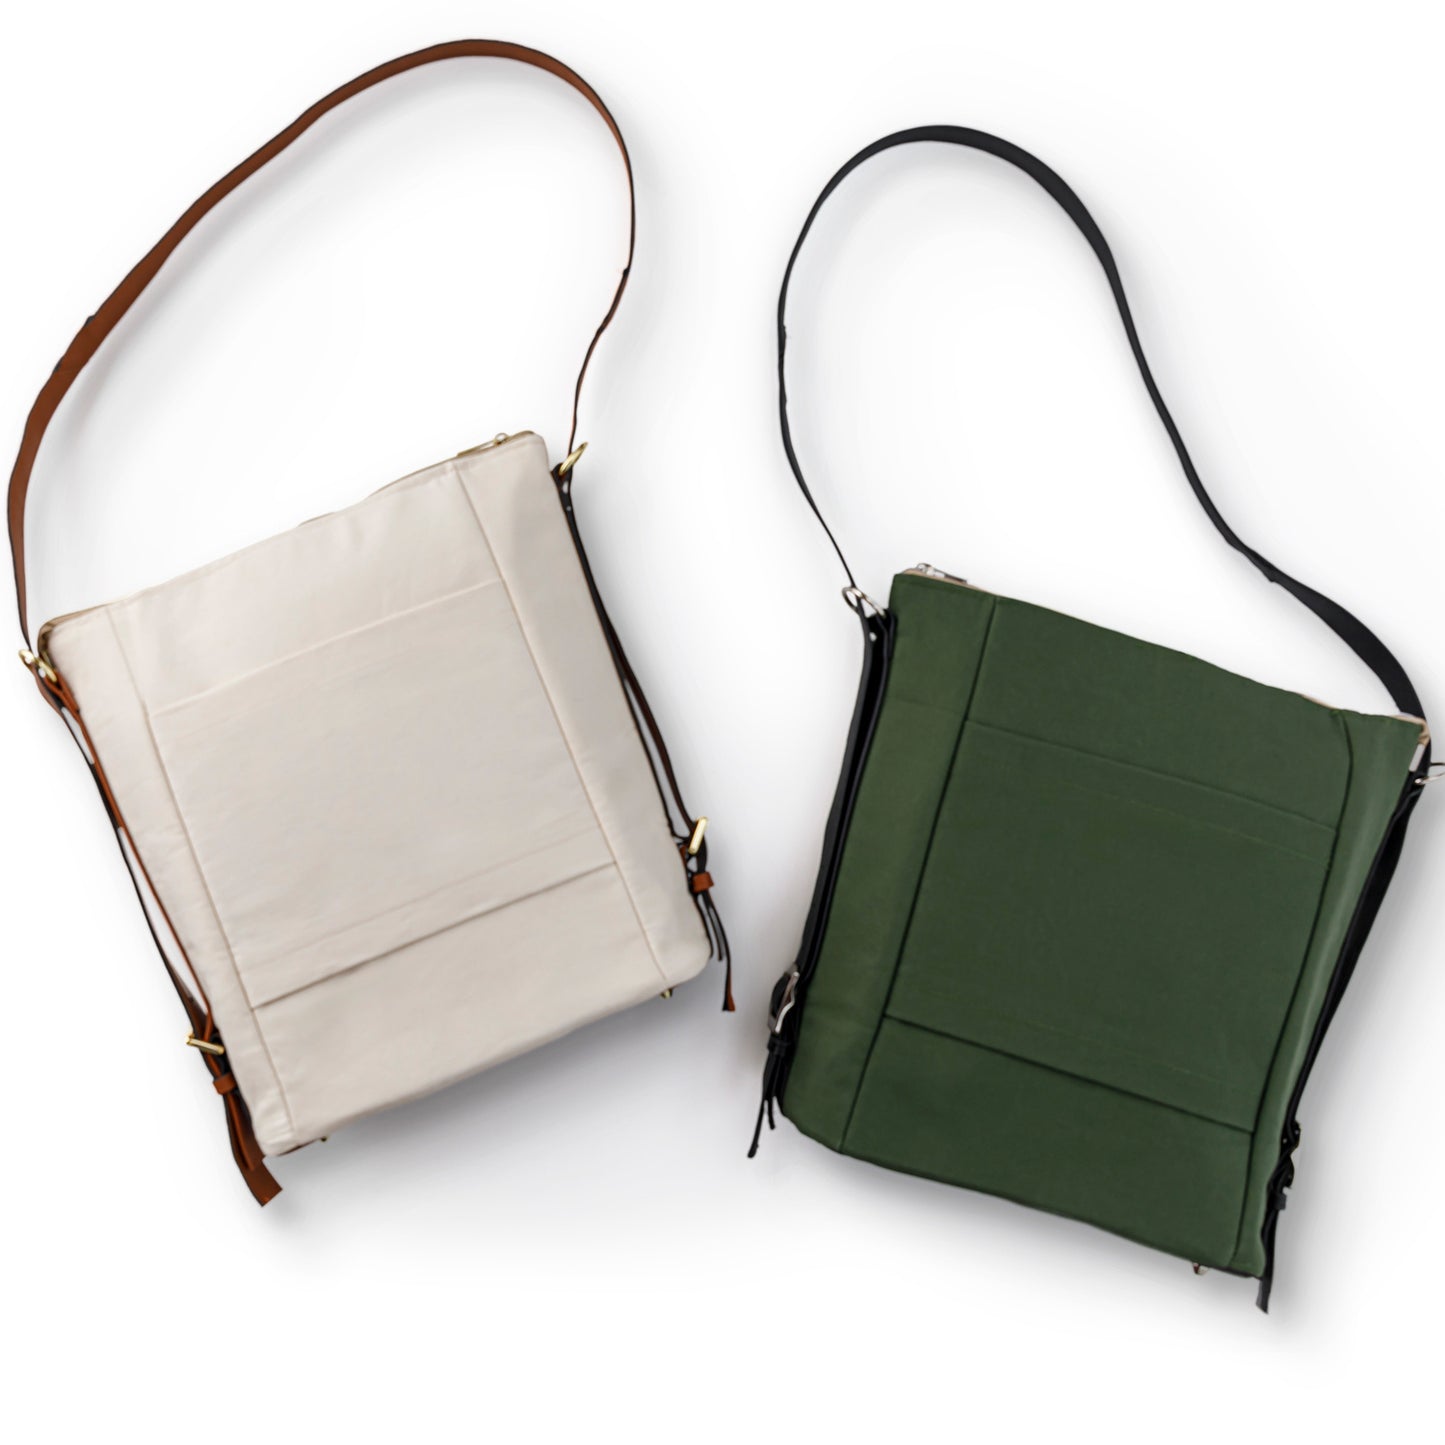 Misty Backpack Shoulder Bag Kit - Black Pebble Faux Leather Alternative View #1